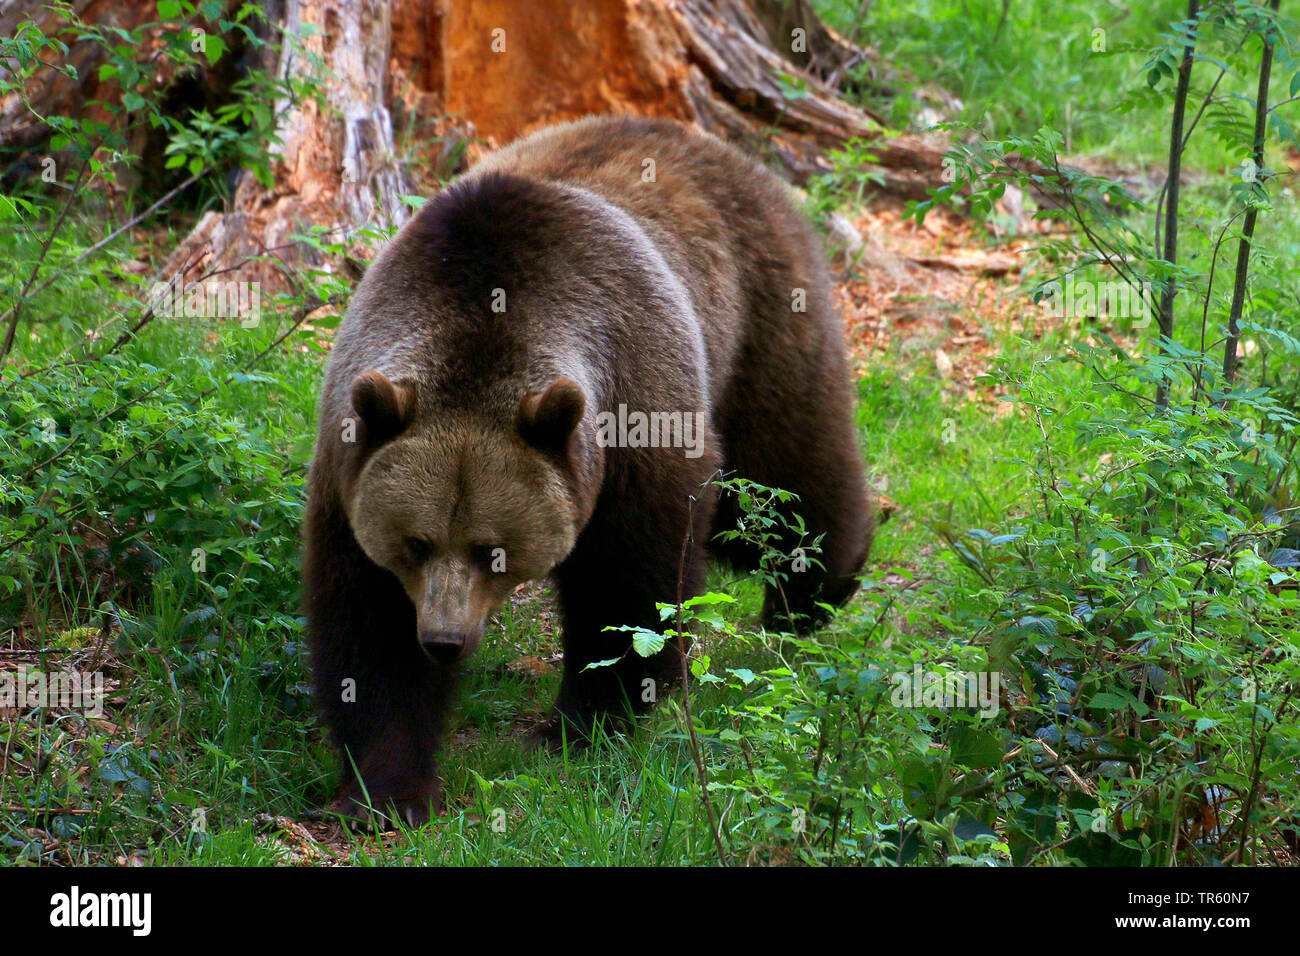 L'ours brun (Ursus arctos arctos), en passant devant une racine, Allemagne Banque D'Images